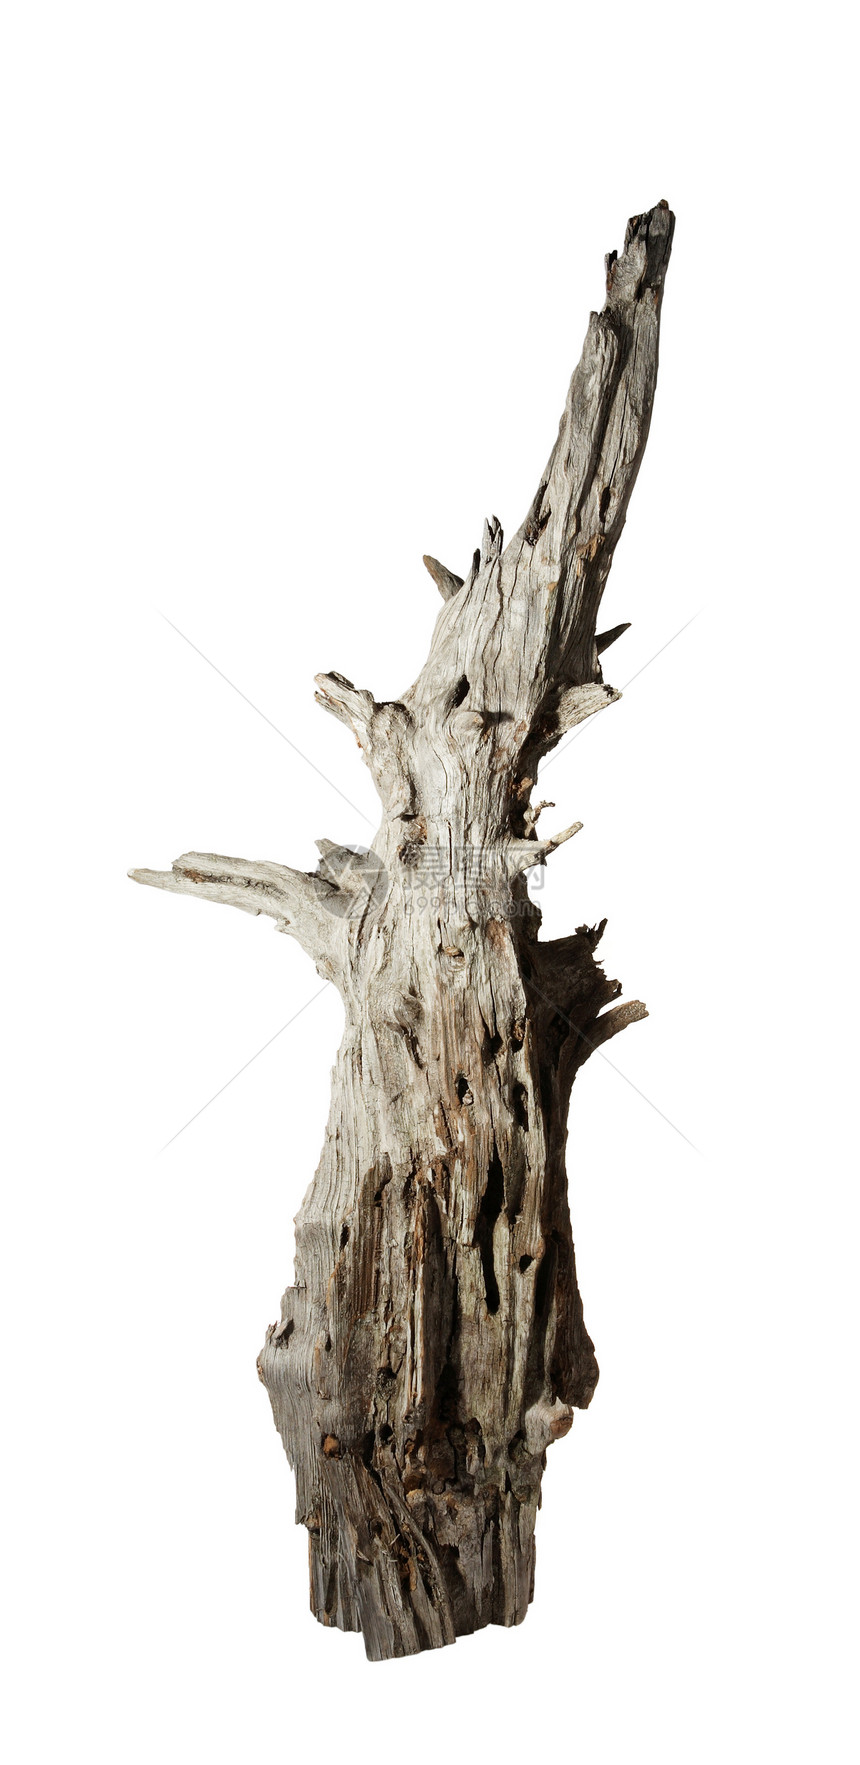 白色背景上分解的旧刺树老化森林木材硬木节孔材料宏观历史棕色日志图片